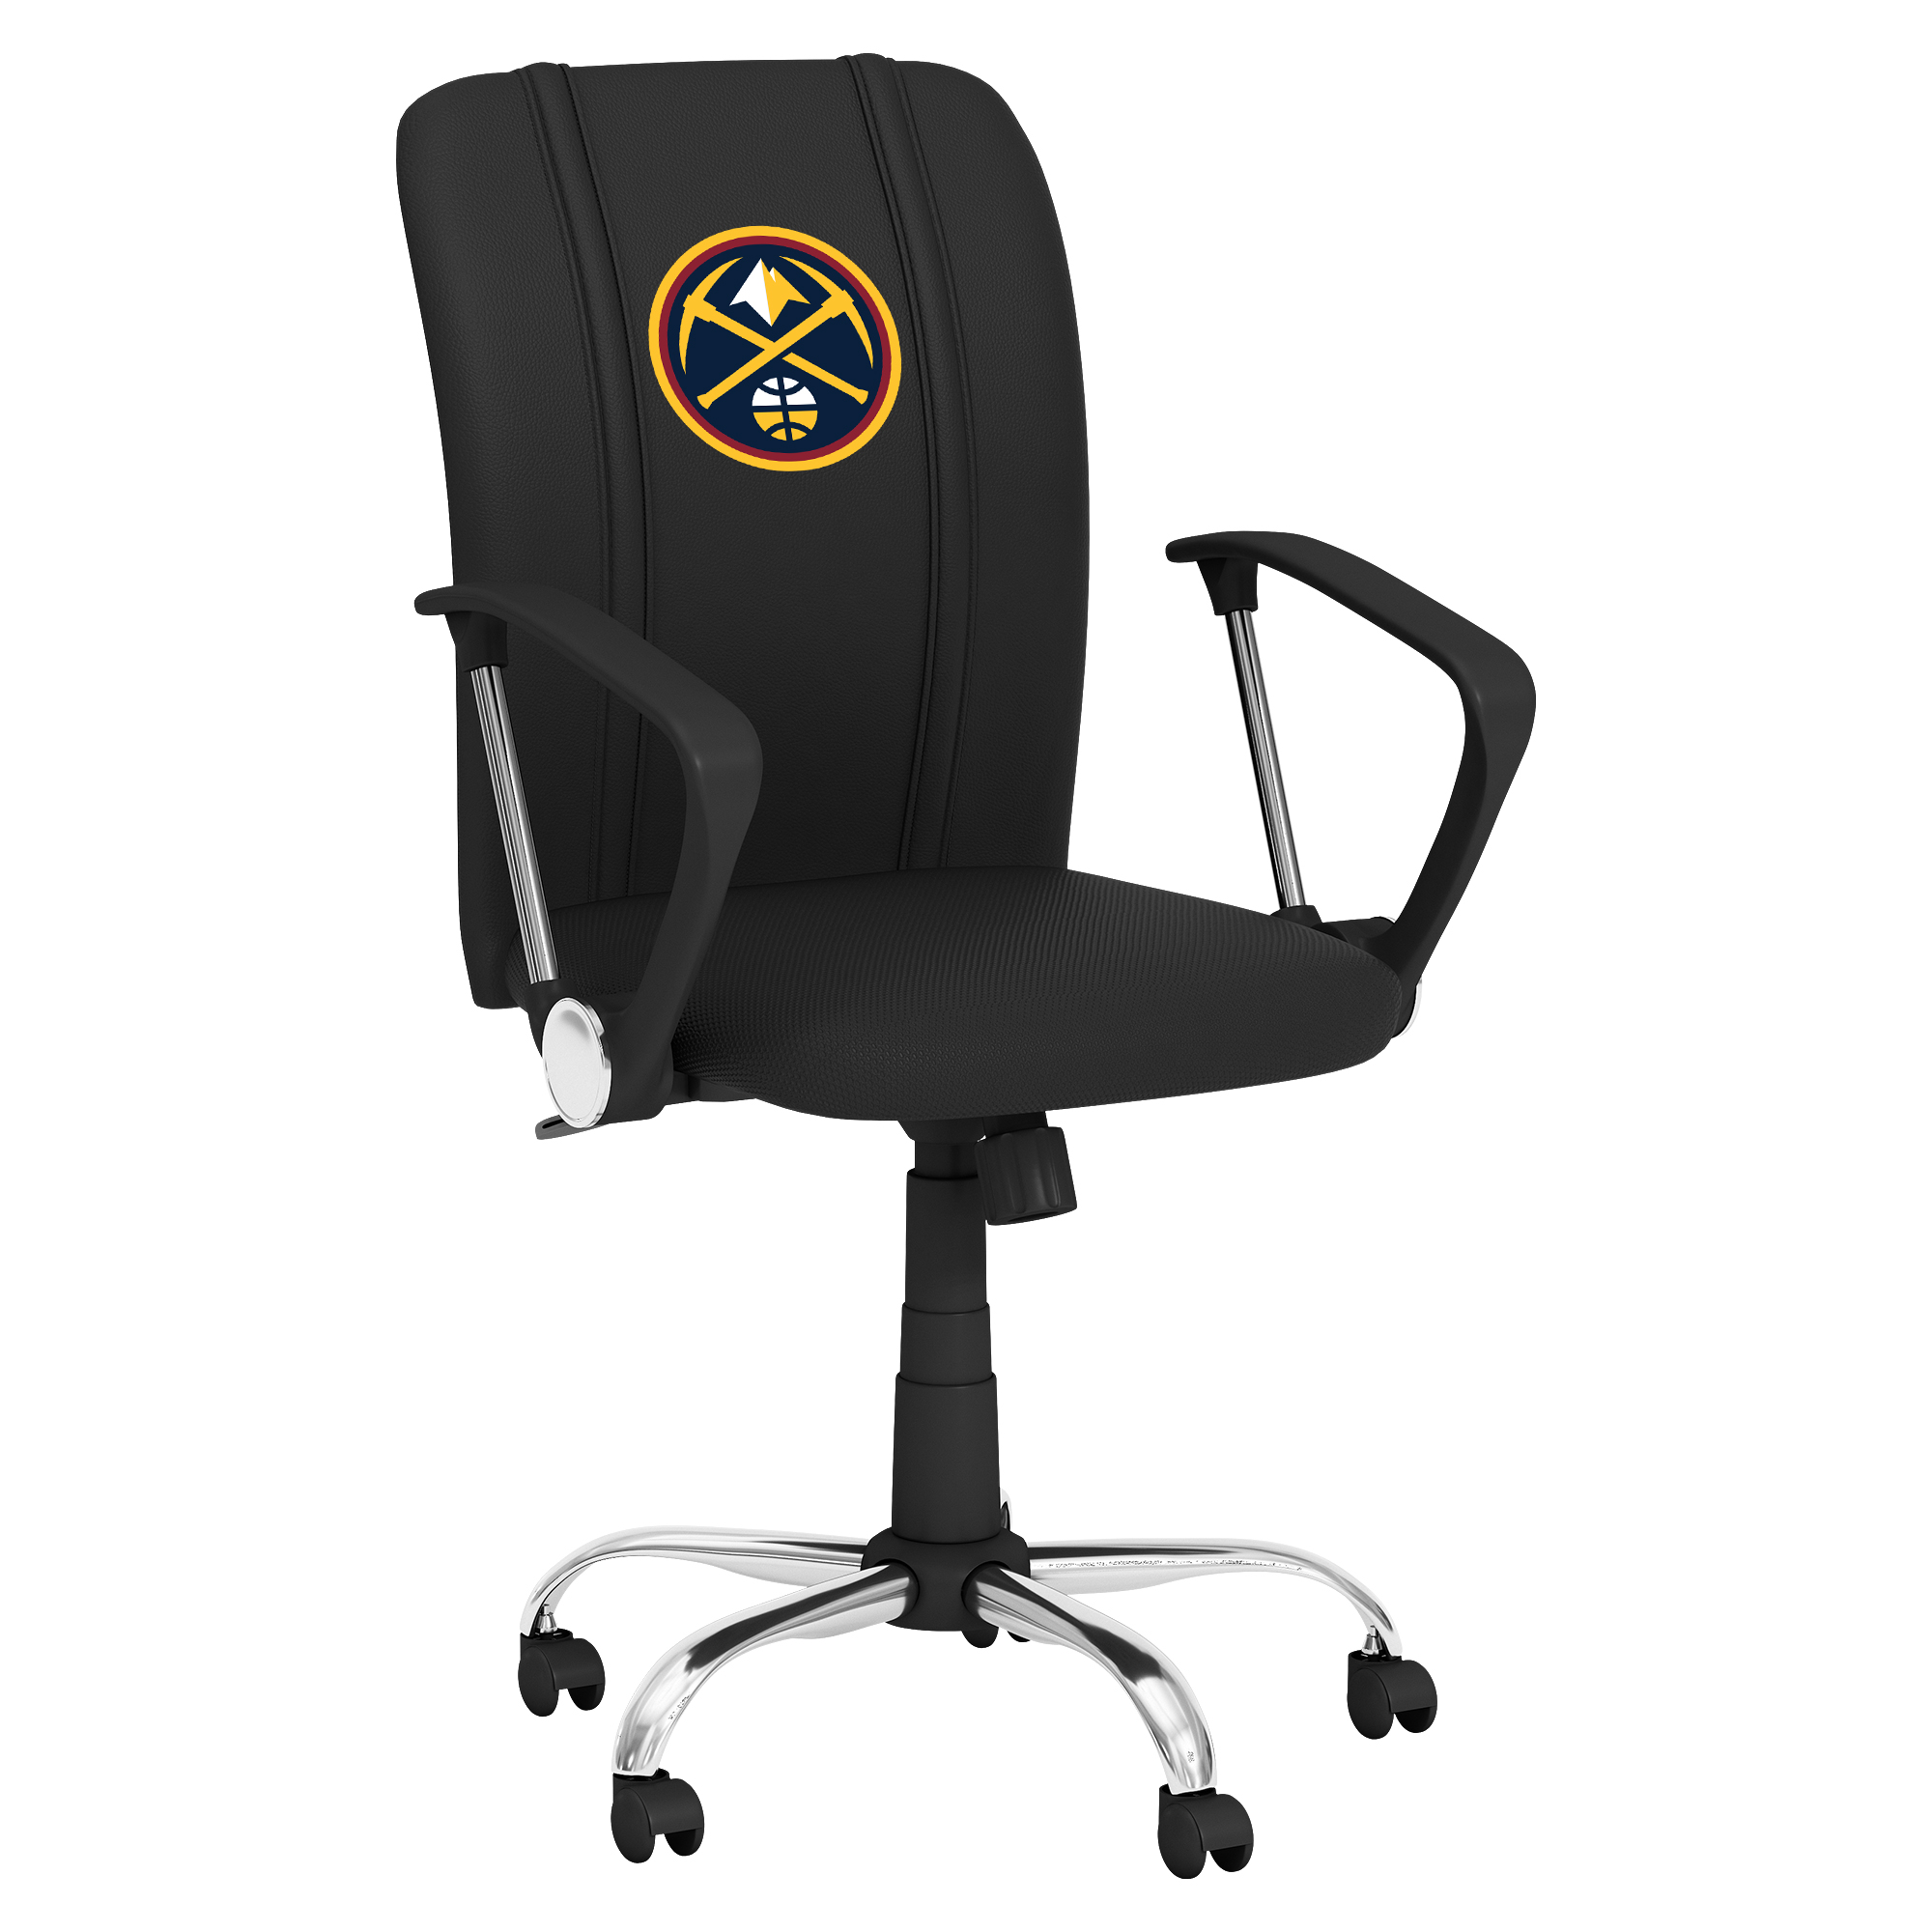 Denver Nuggets Curve Task Chair with Denver Nuggets Logo